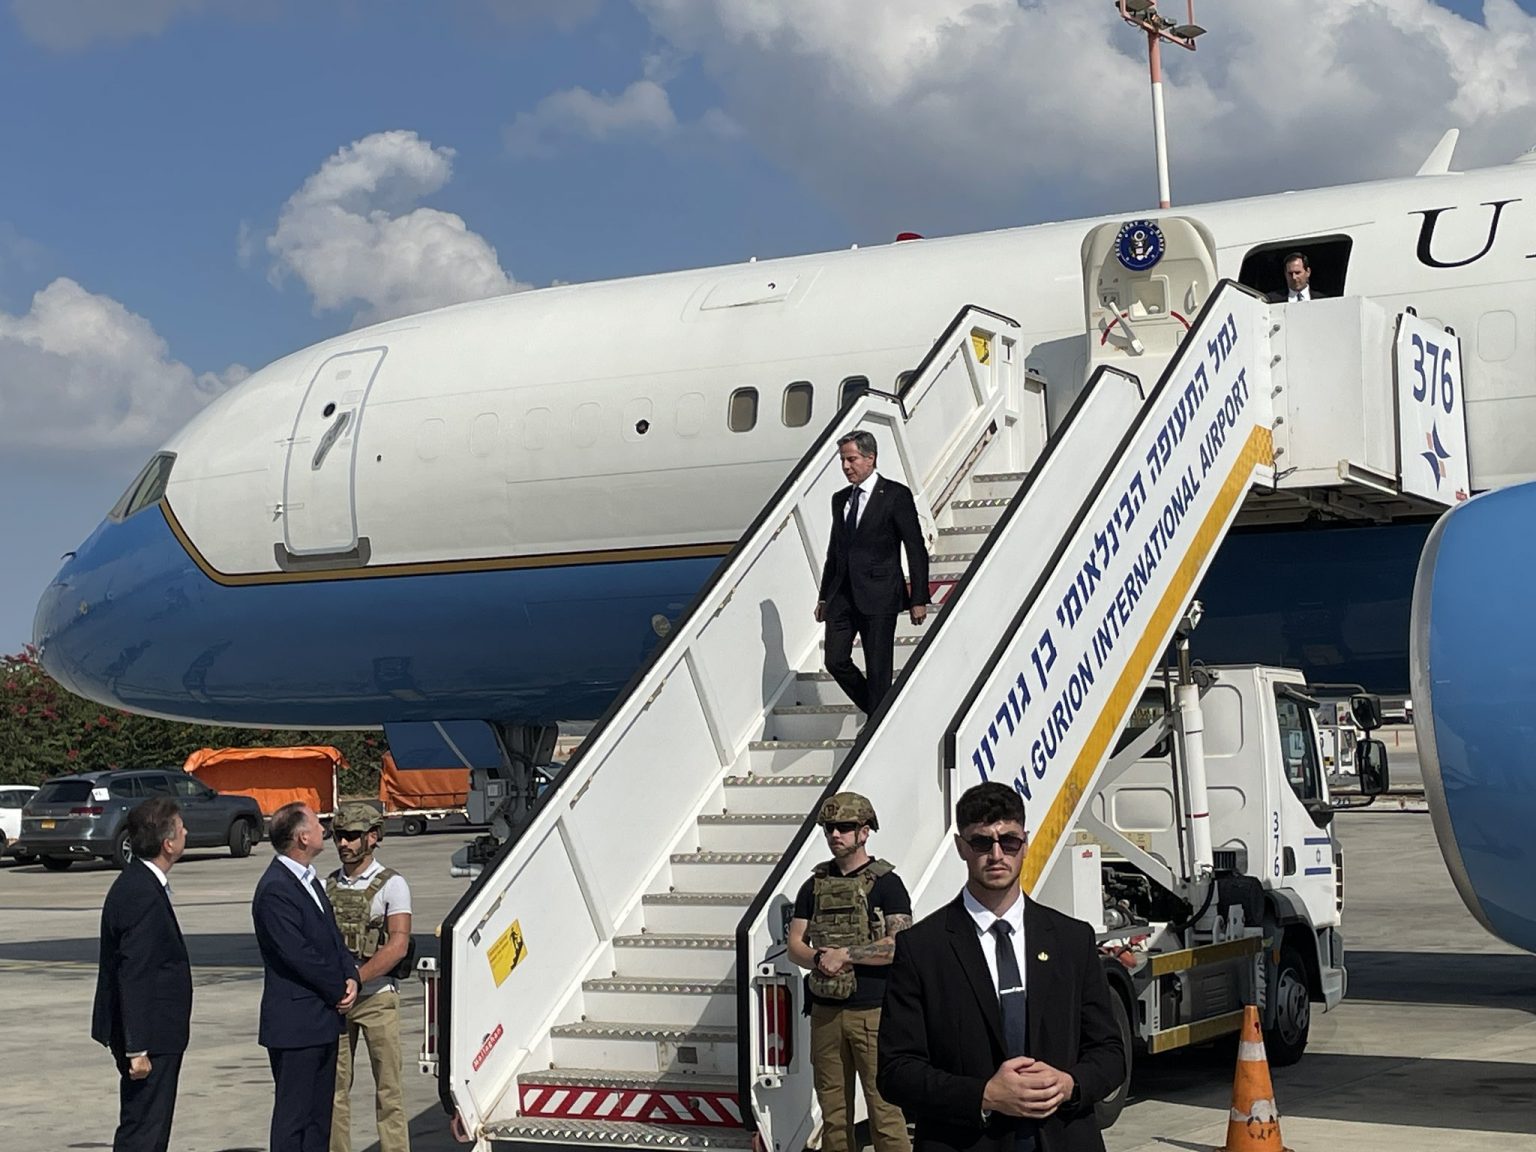 ԱՄՆ պետքարտուղար Էնթոնի Բլինկենը ժամանել է Իսրայել՝ երկրի ղեկավարության հետ հանդիպումների համար